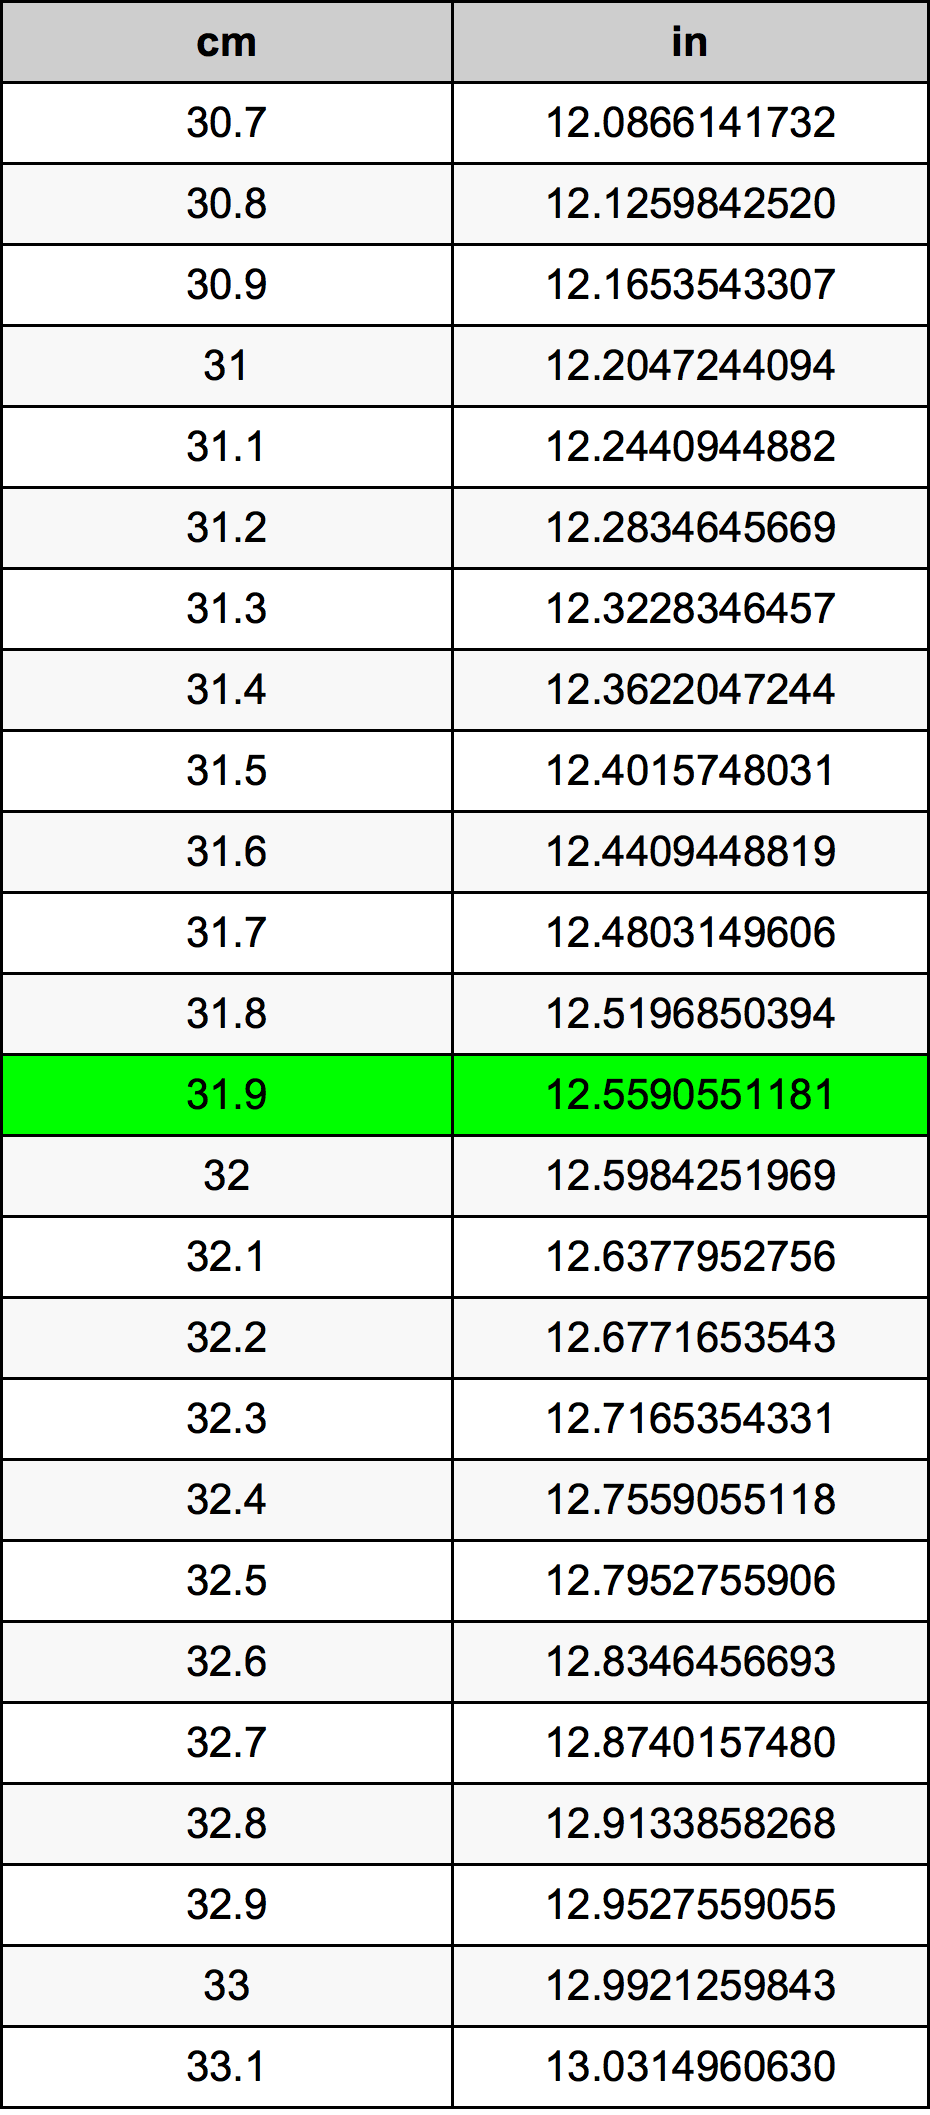 31.9 Centiméter átszámítási táblázat